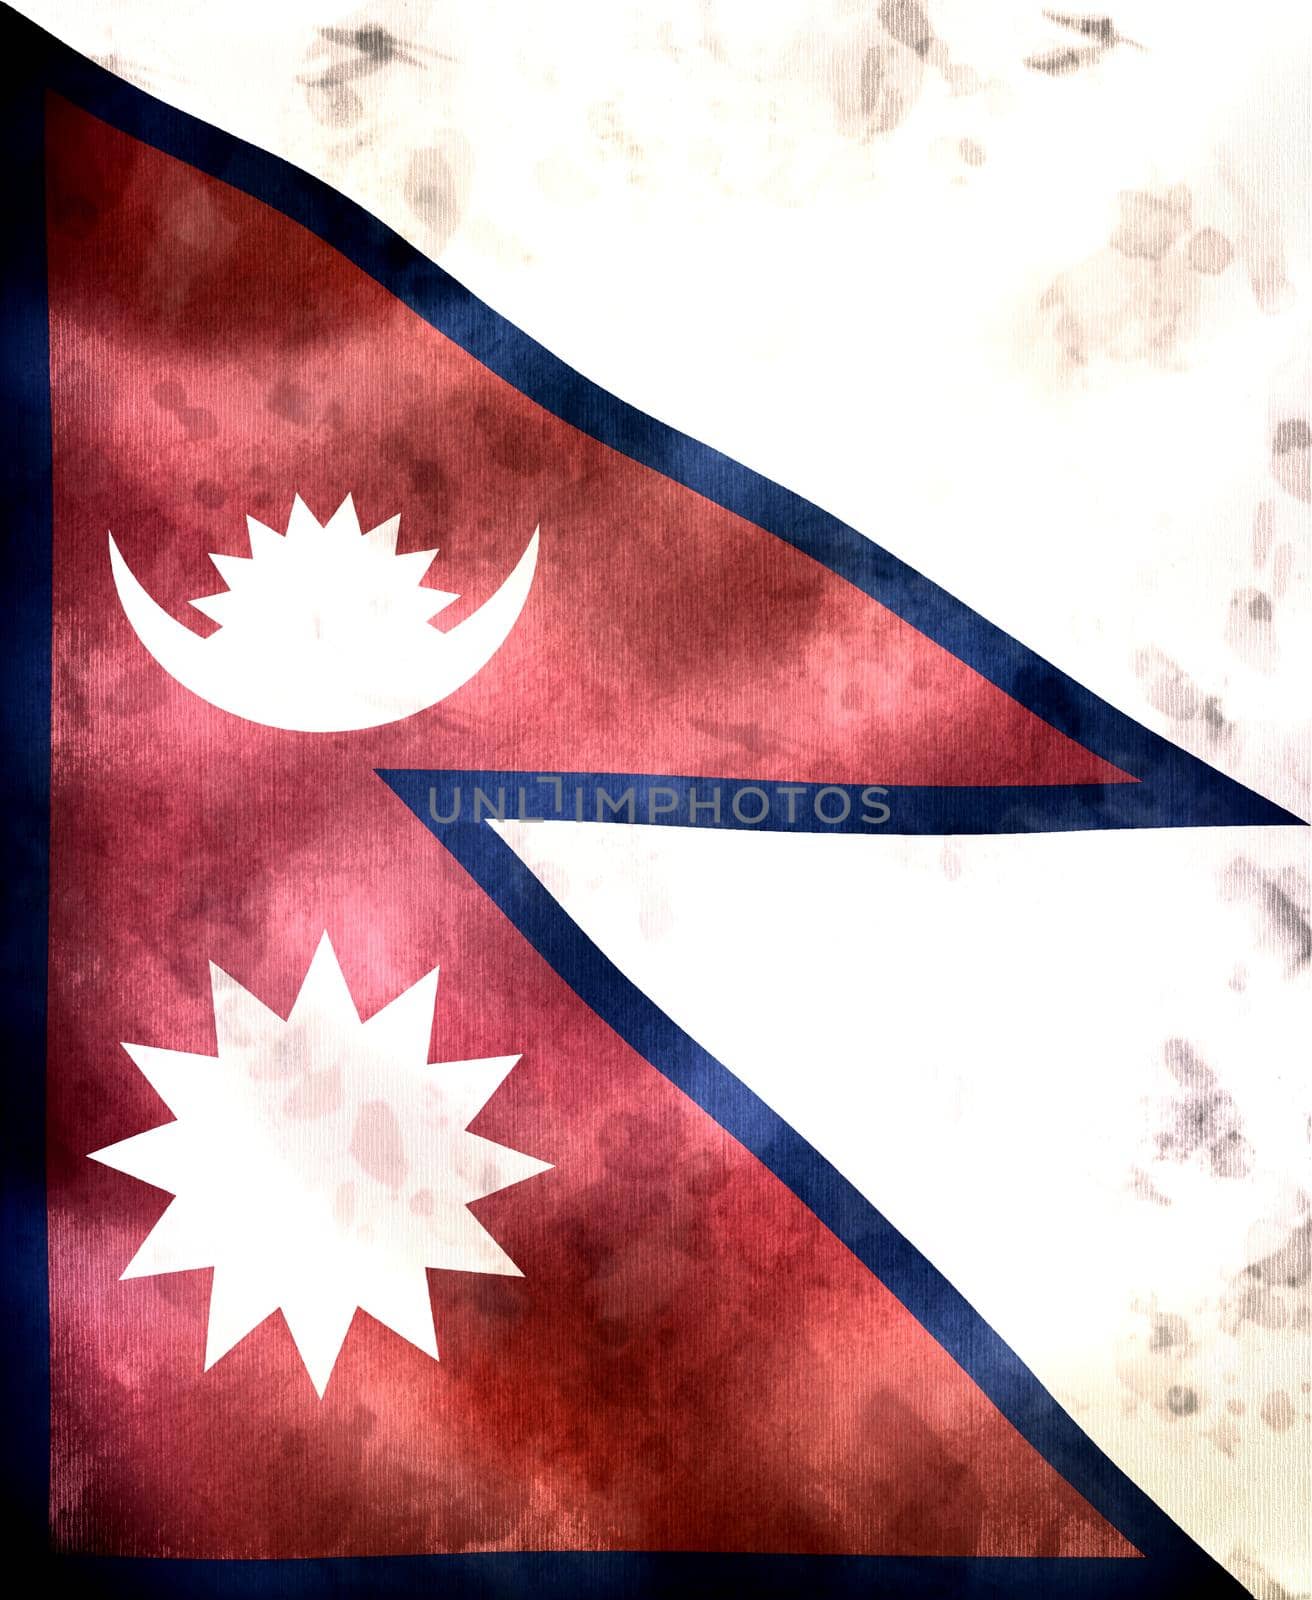 Nepal flag - realistic waving fabric flag